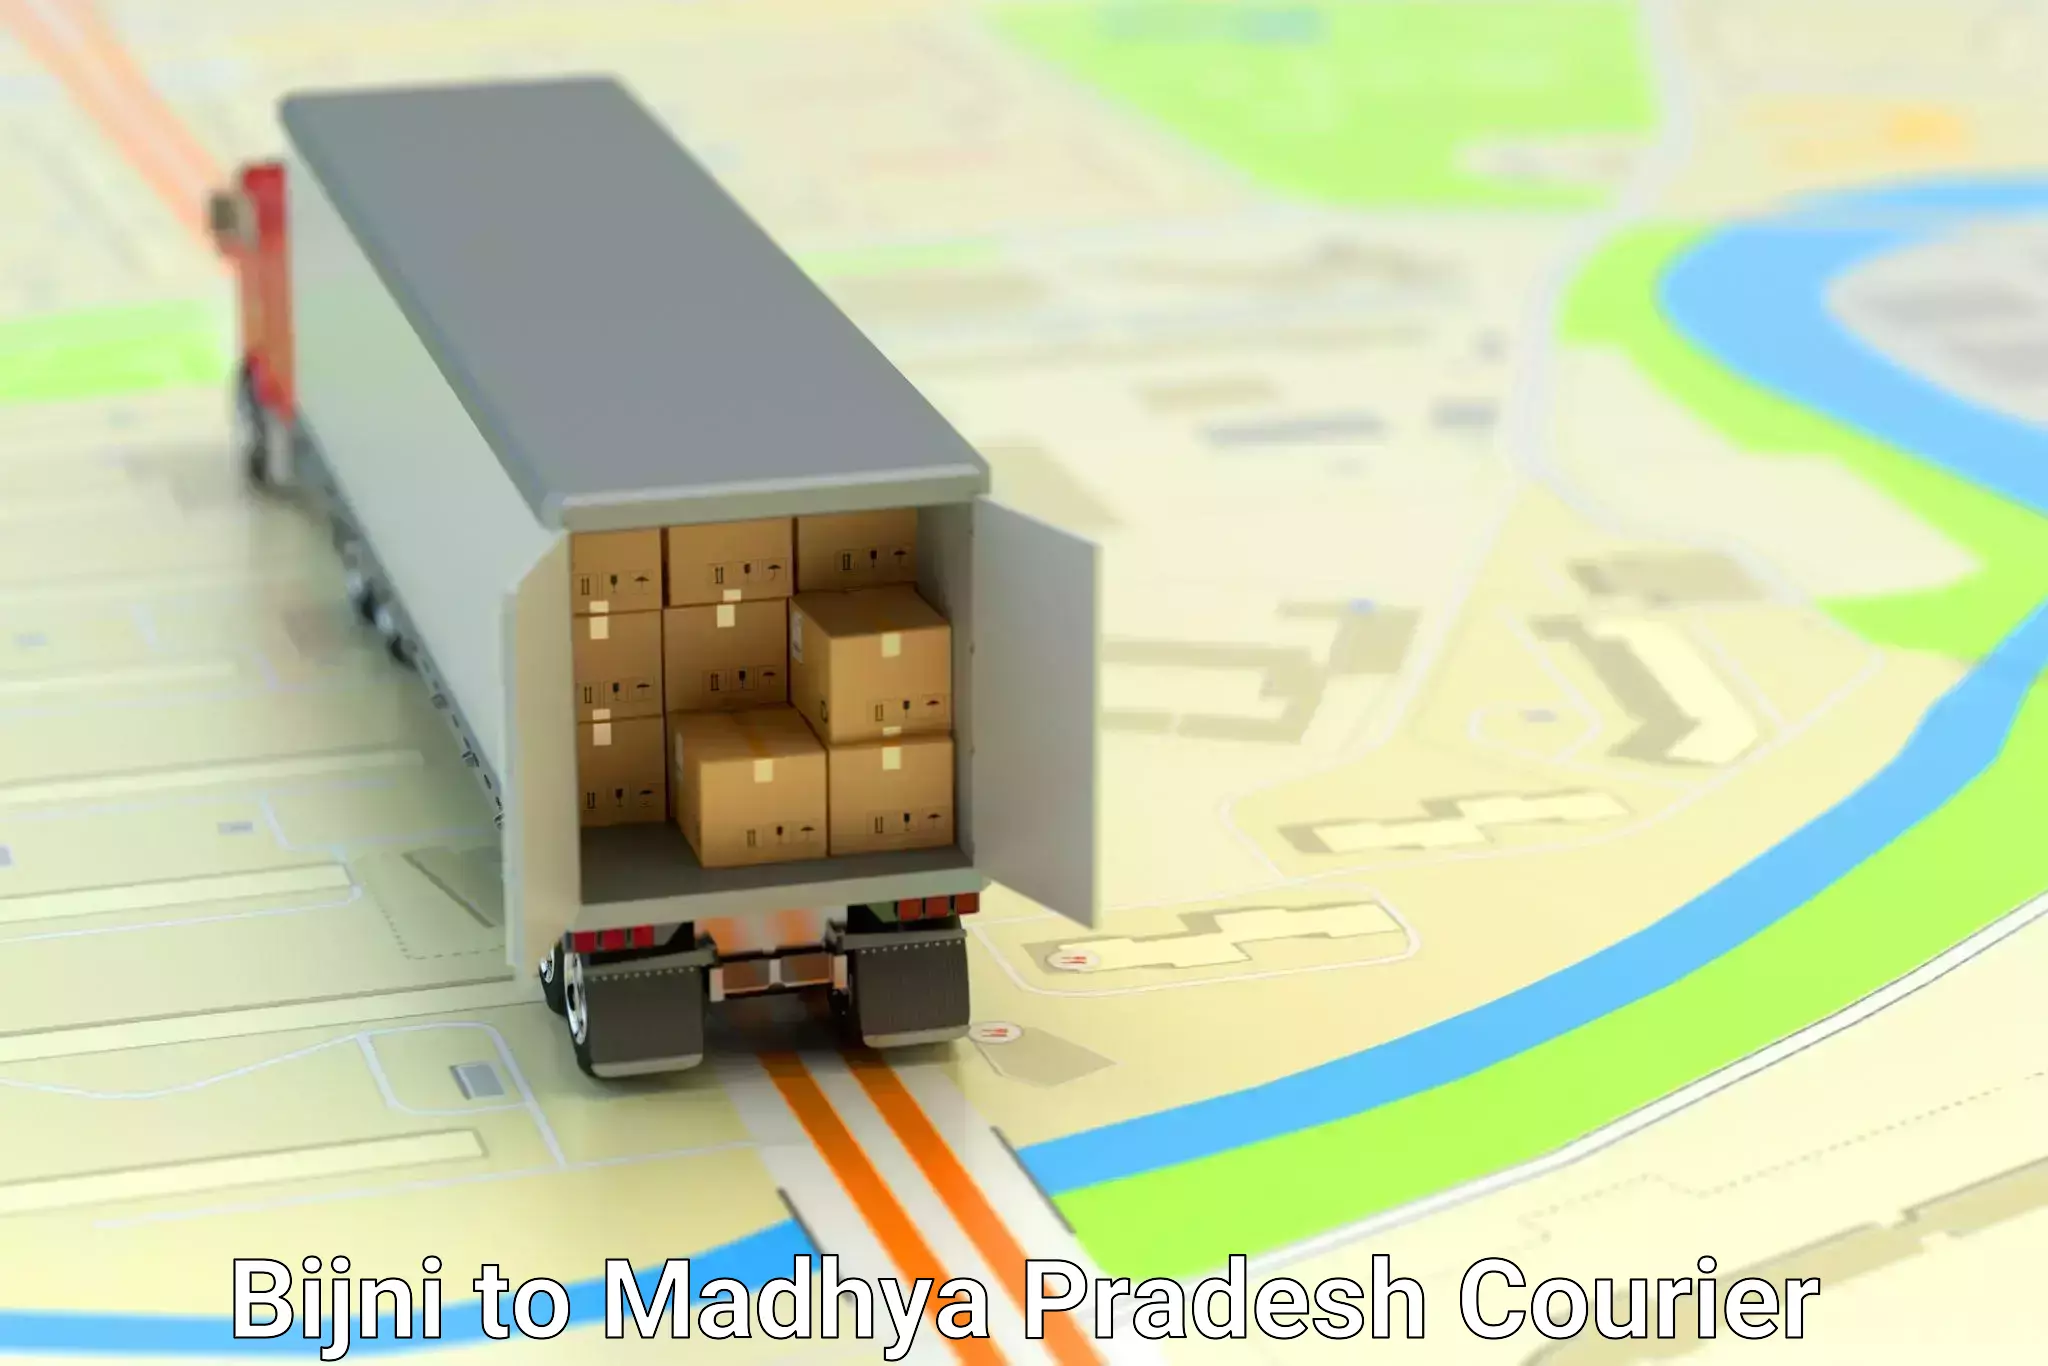 Cargo delivery service Bijni to Pachore